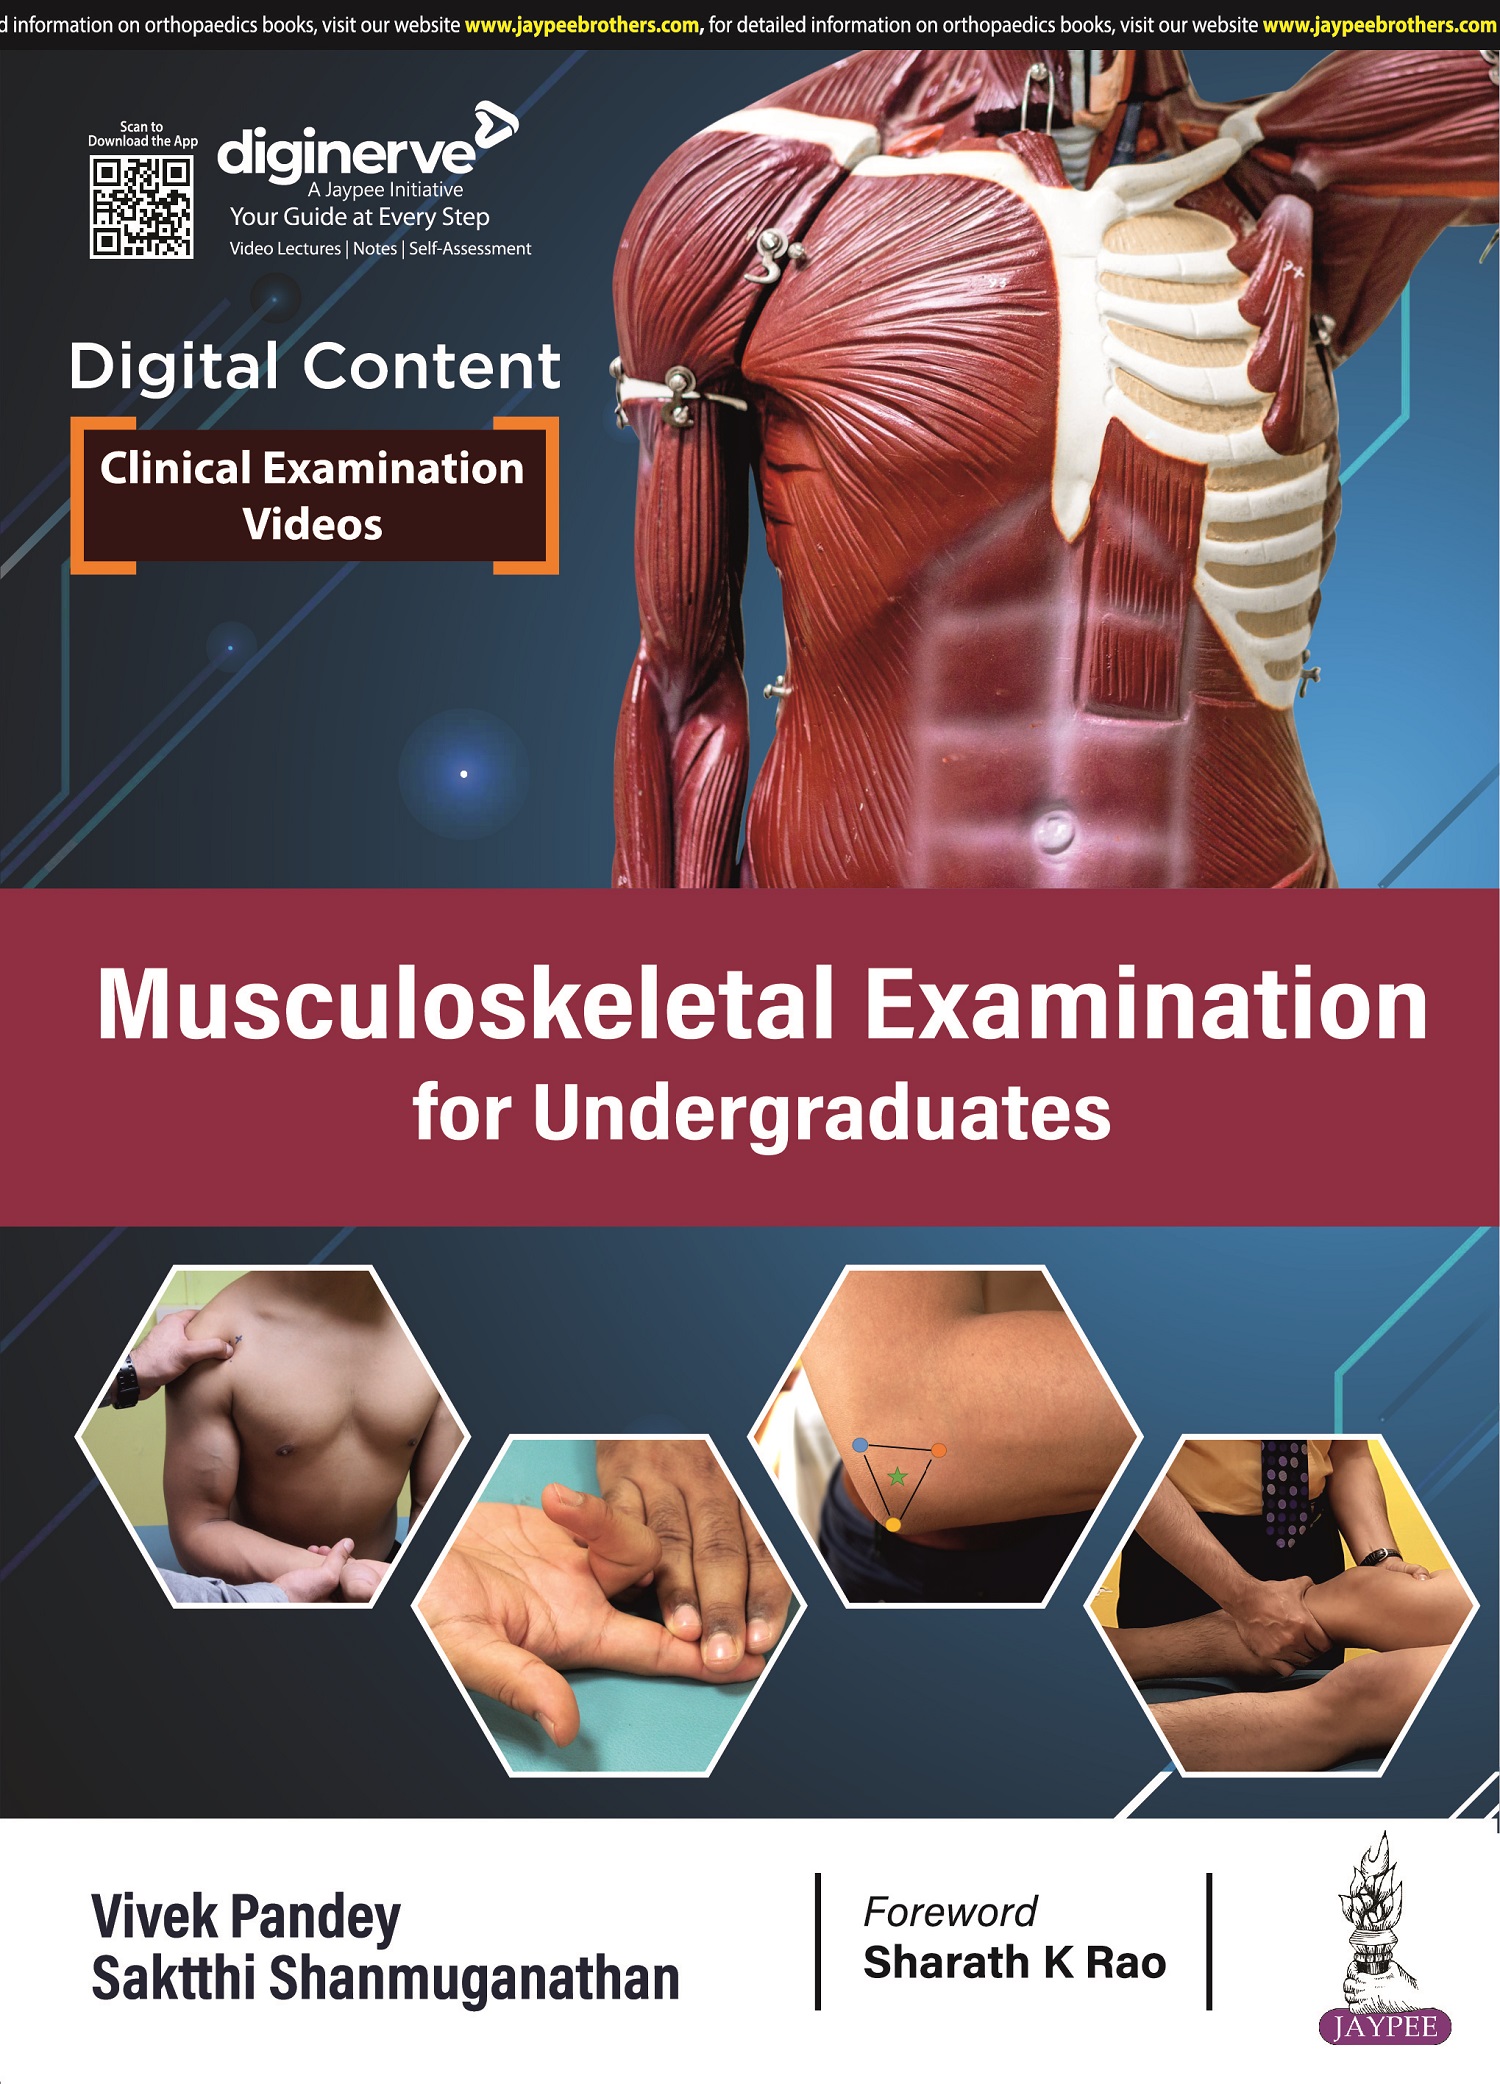 Musculoskeletal Examination for Undergraduates